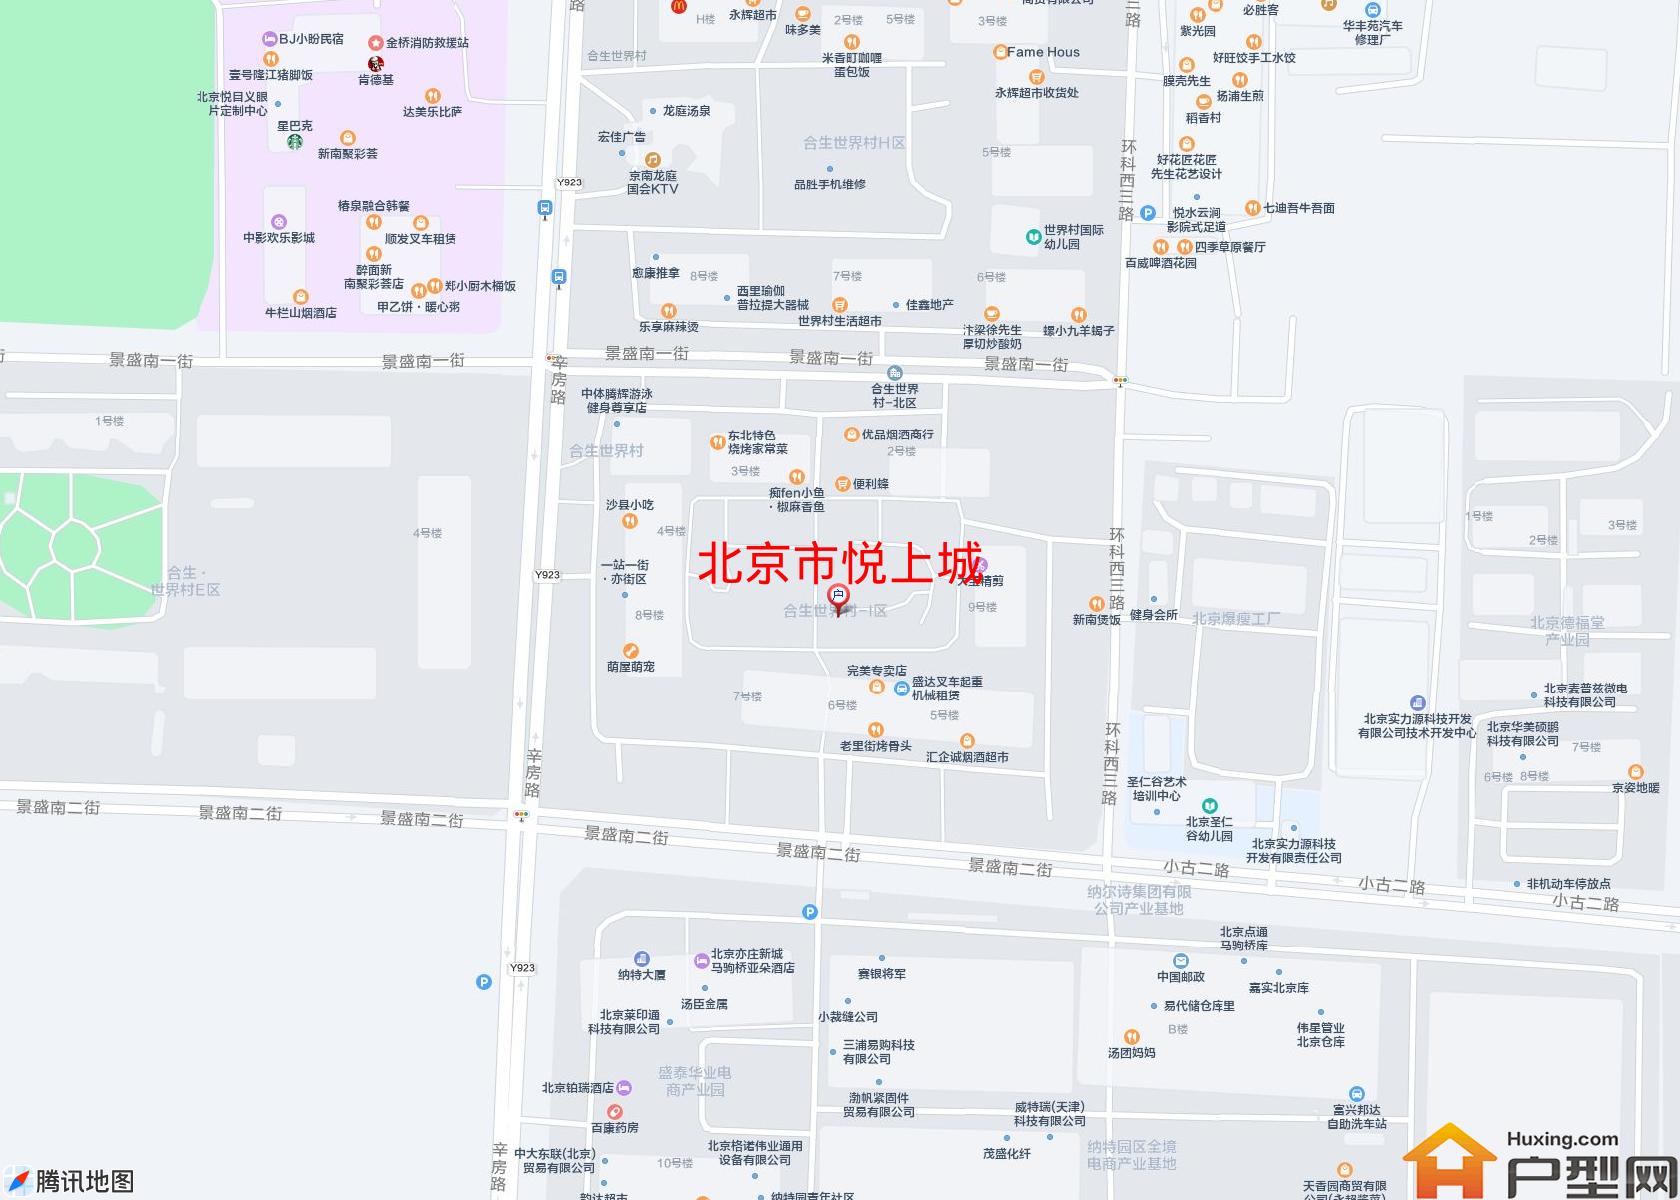 悦上城小区 - 户型网